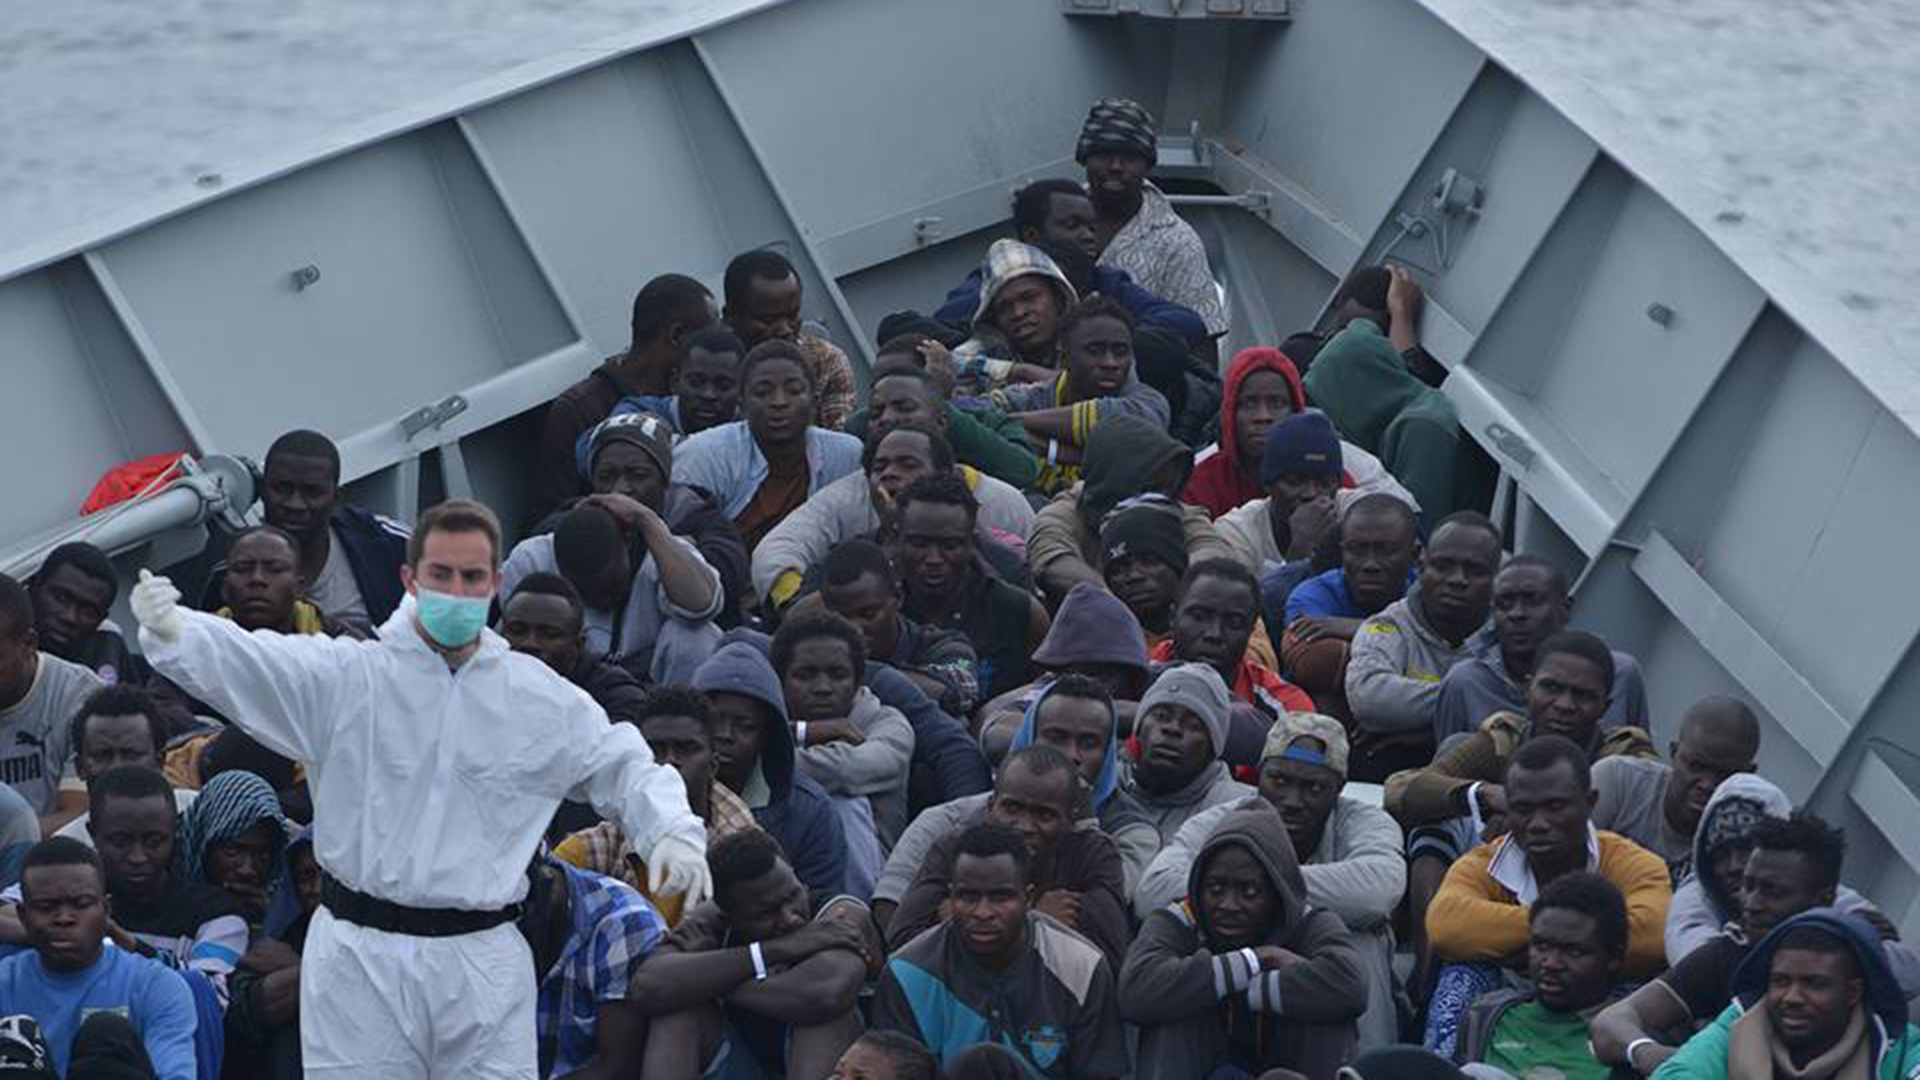 La fragata ‘Canarias’ llega a Messina con 636 inmigrantes y un bebé nacido a bordo